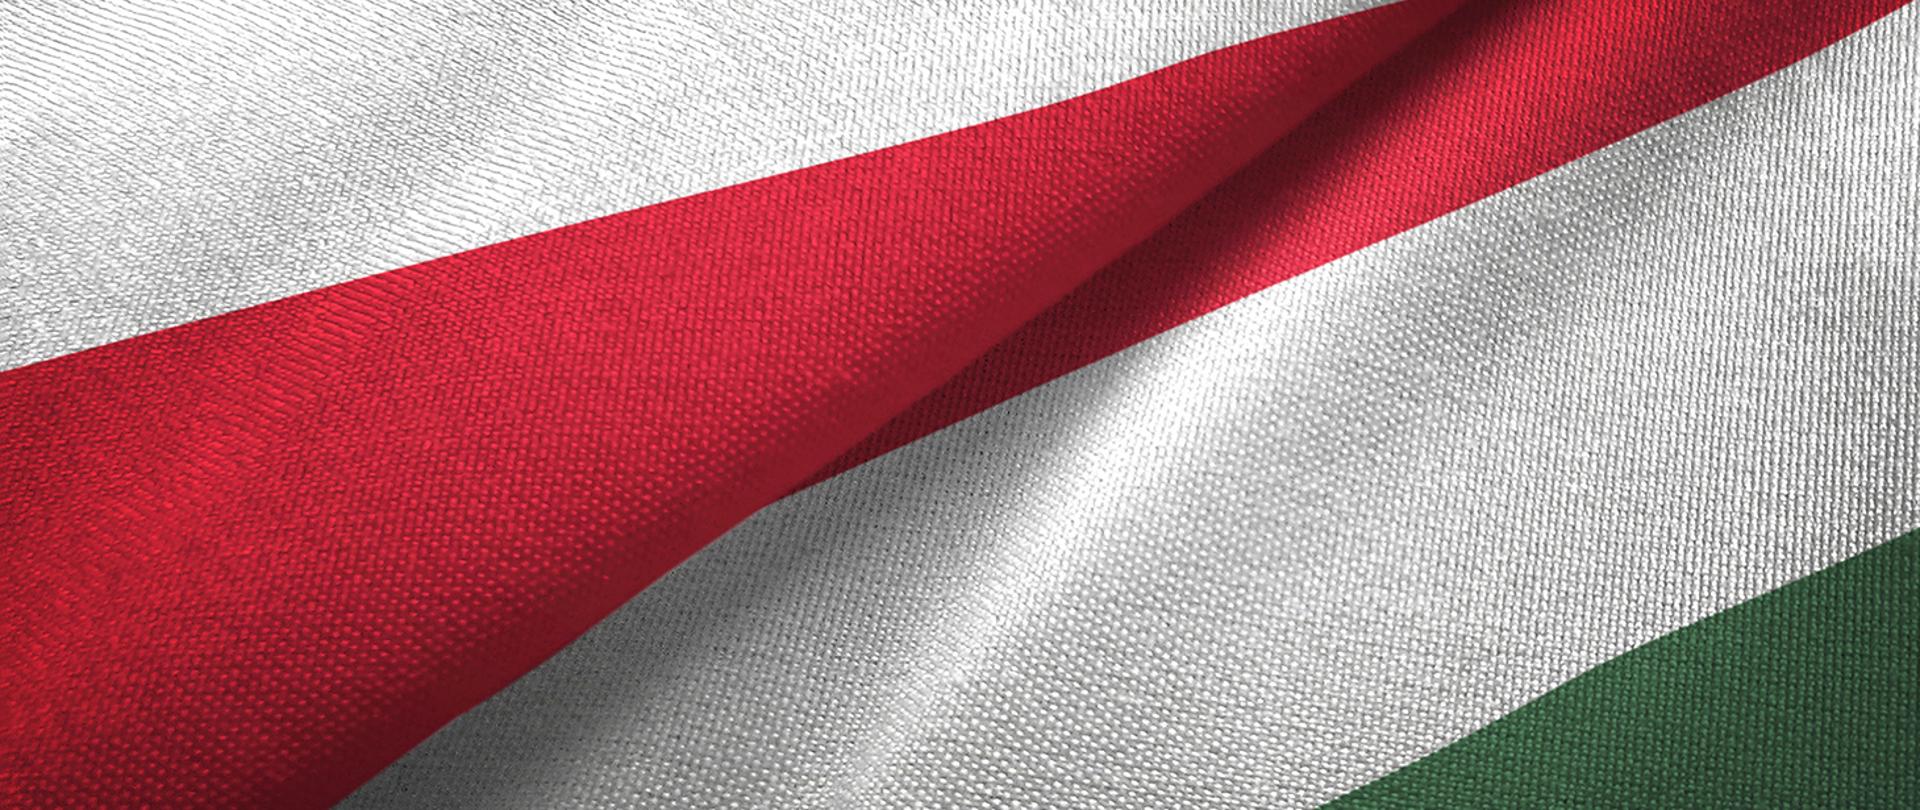 Połączona flaga Polski i Włoch